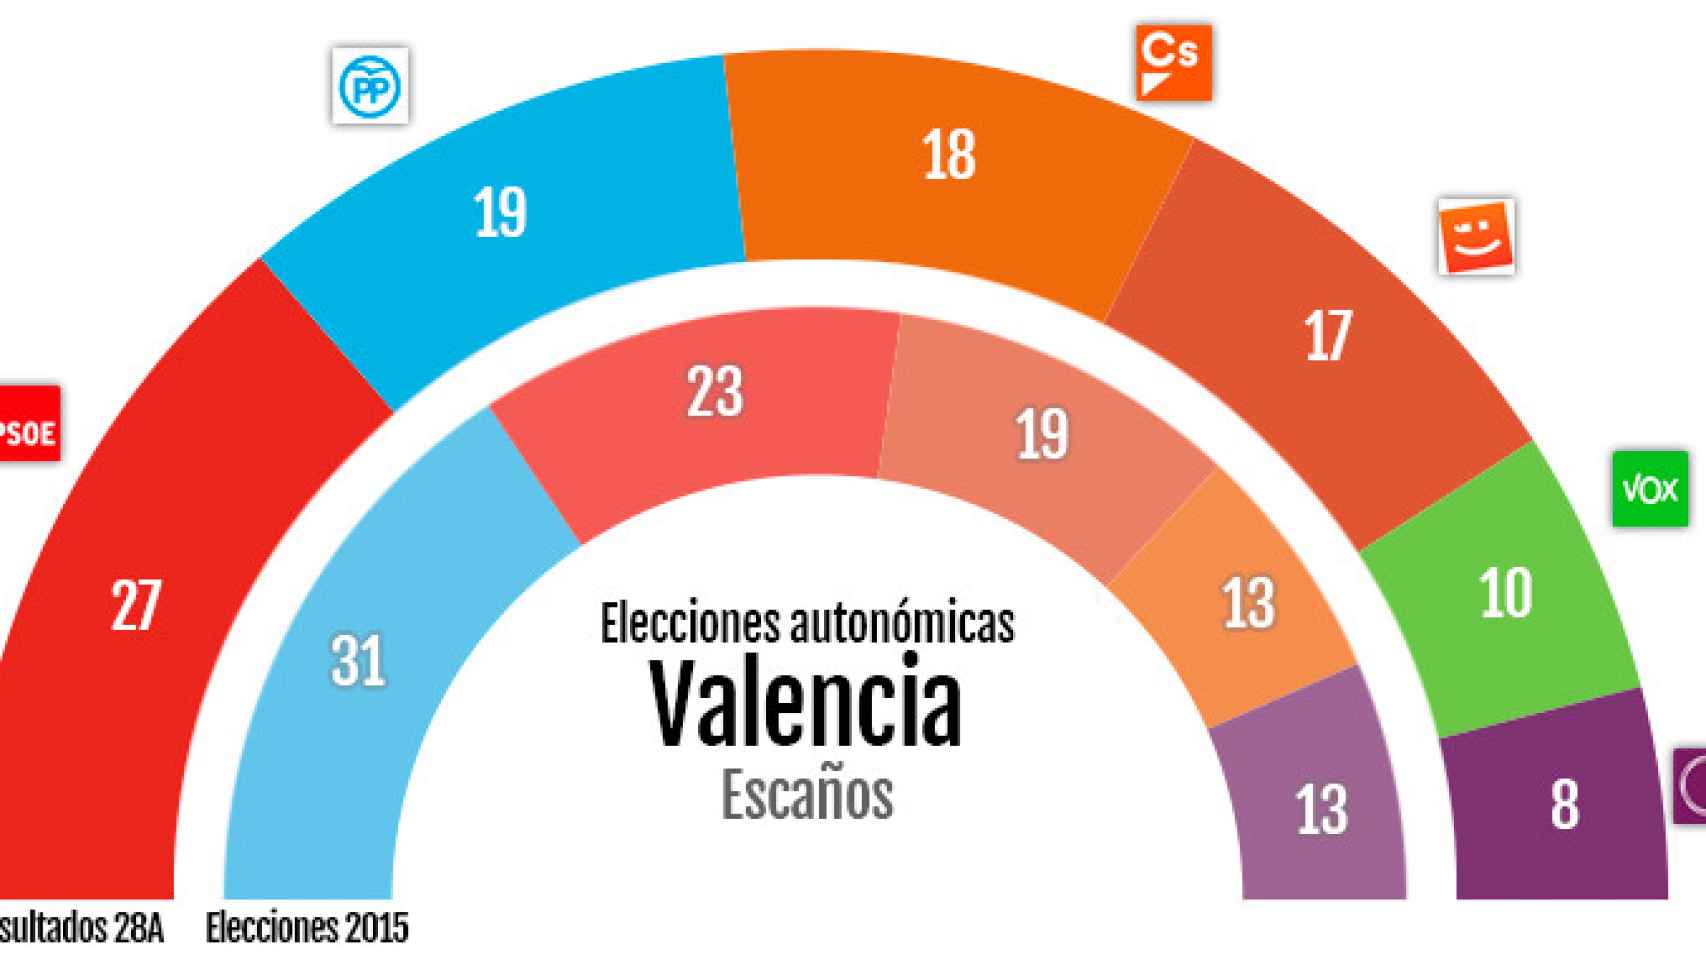 Resultado elecciones autonómicas de Valencia el 28A en comparación con las elecciones de 2015 / CG